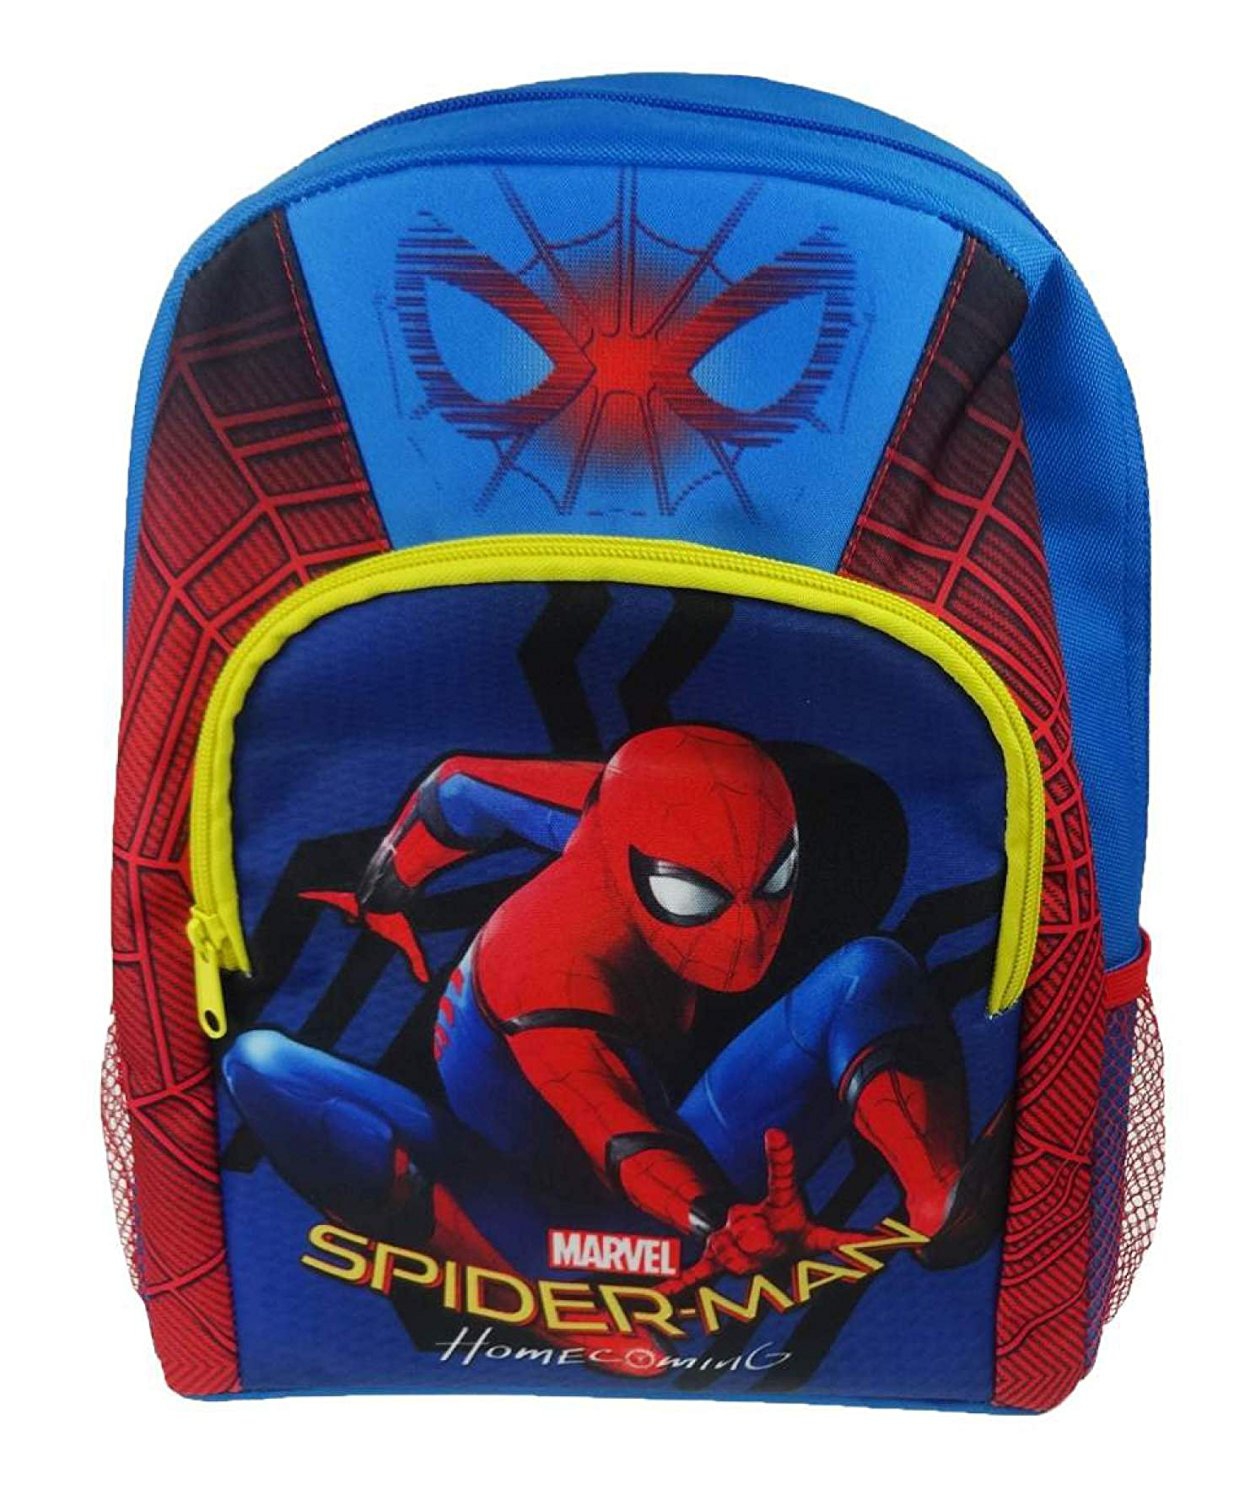 Marvel Spiderman Homecoming School Bag Rucksack Backpack